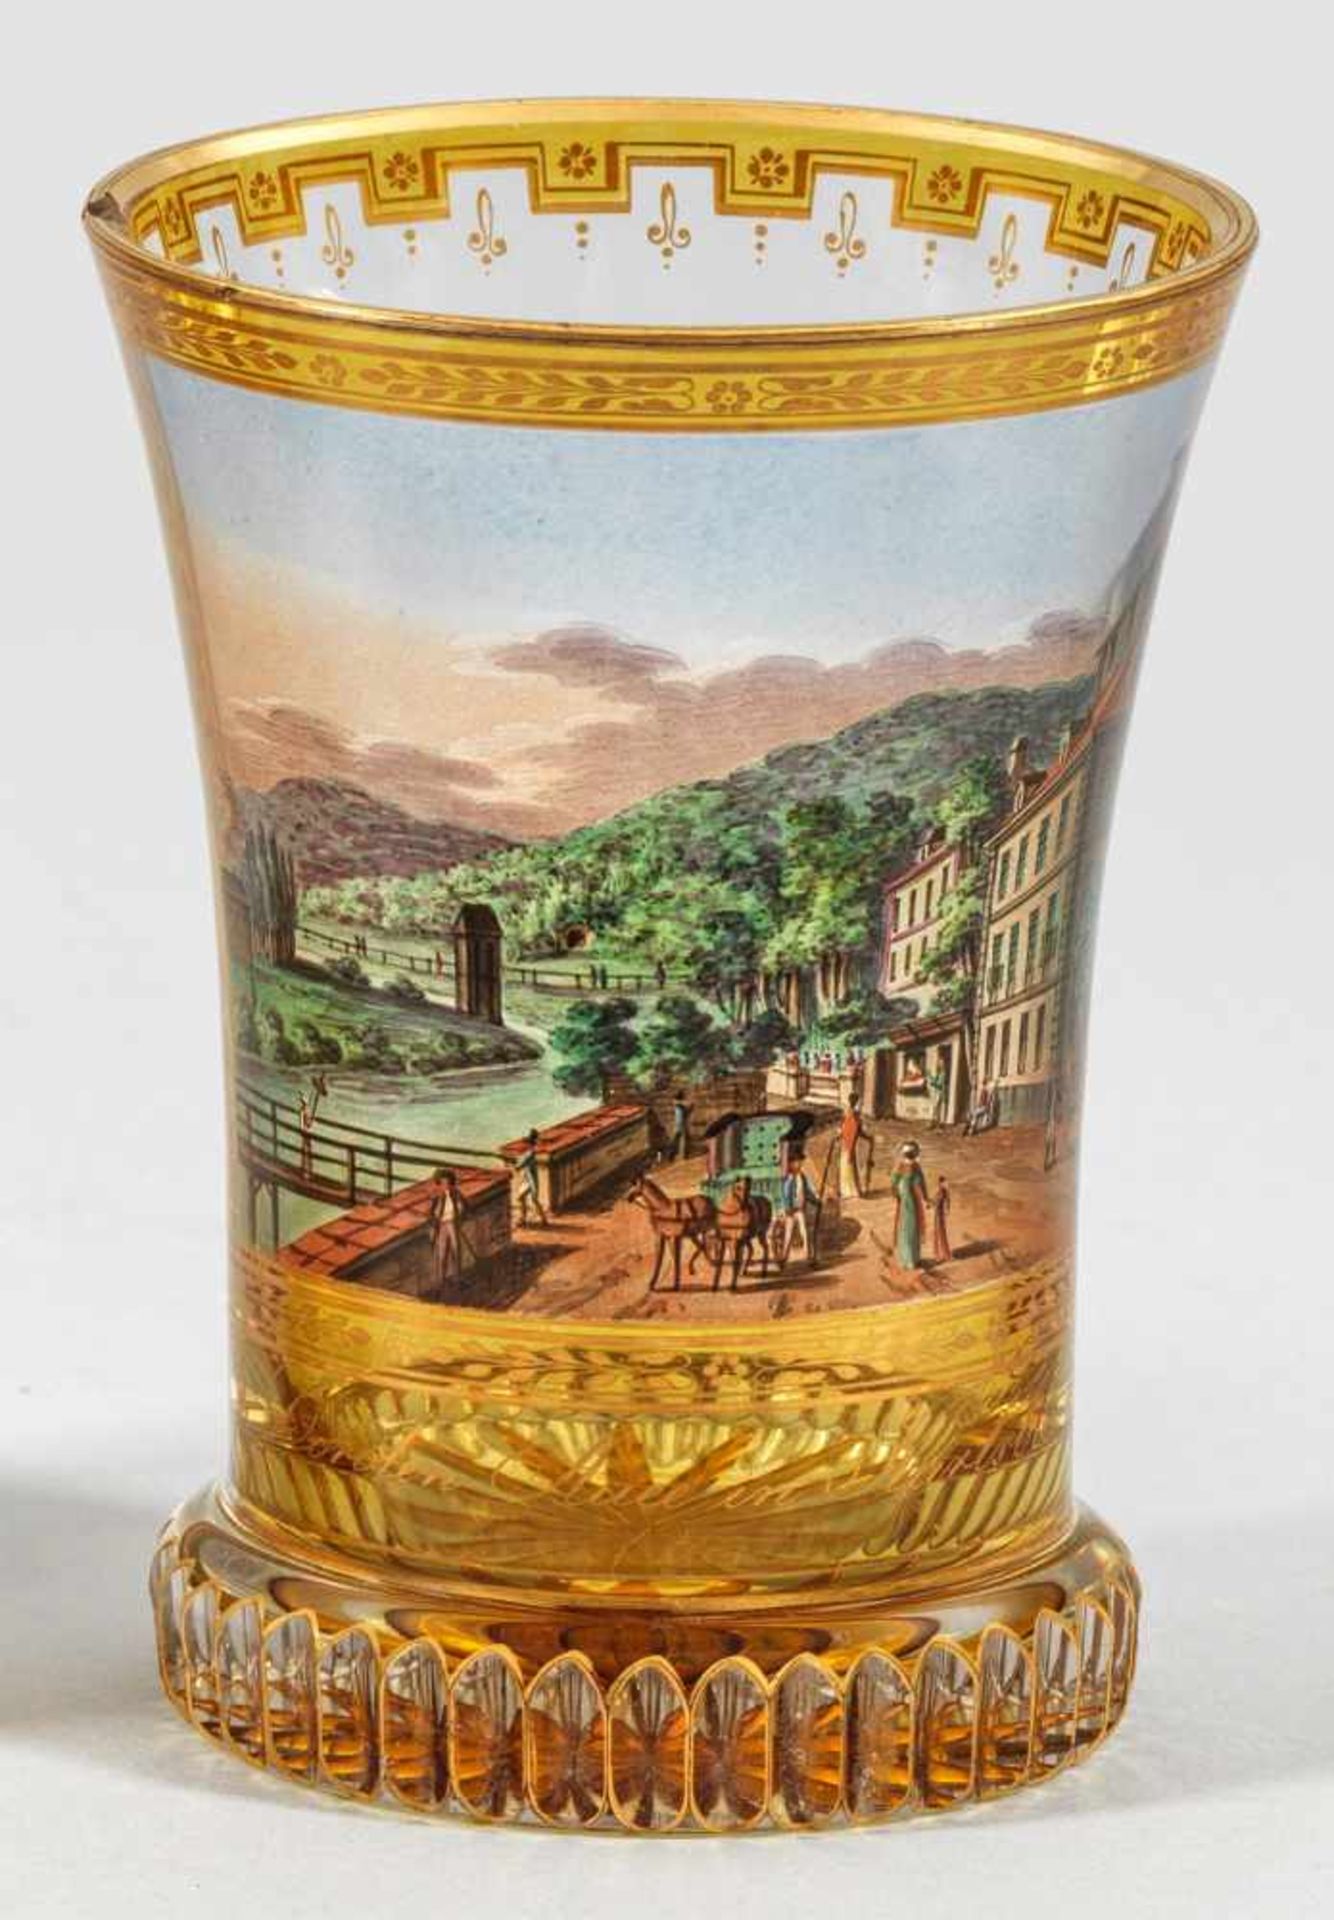 Biedermeier-Ranftbecher mit Ansicht von Karlsbad(Karlovy Vary)Farbloses Glas, geschliffen.